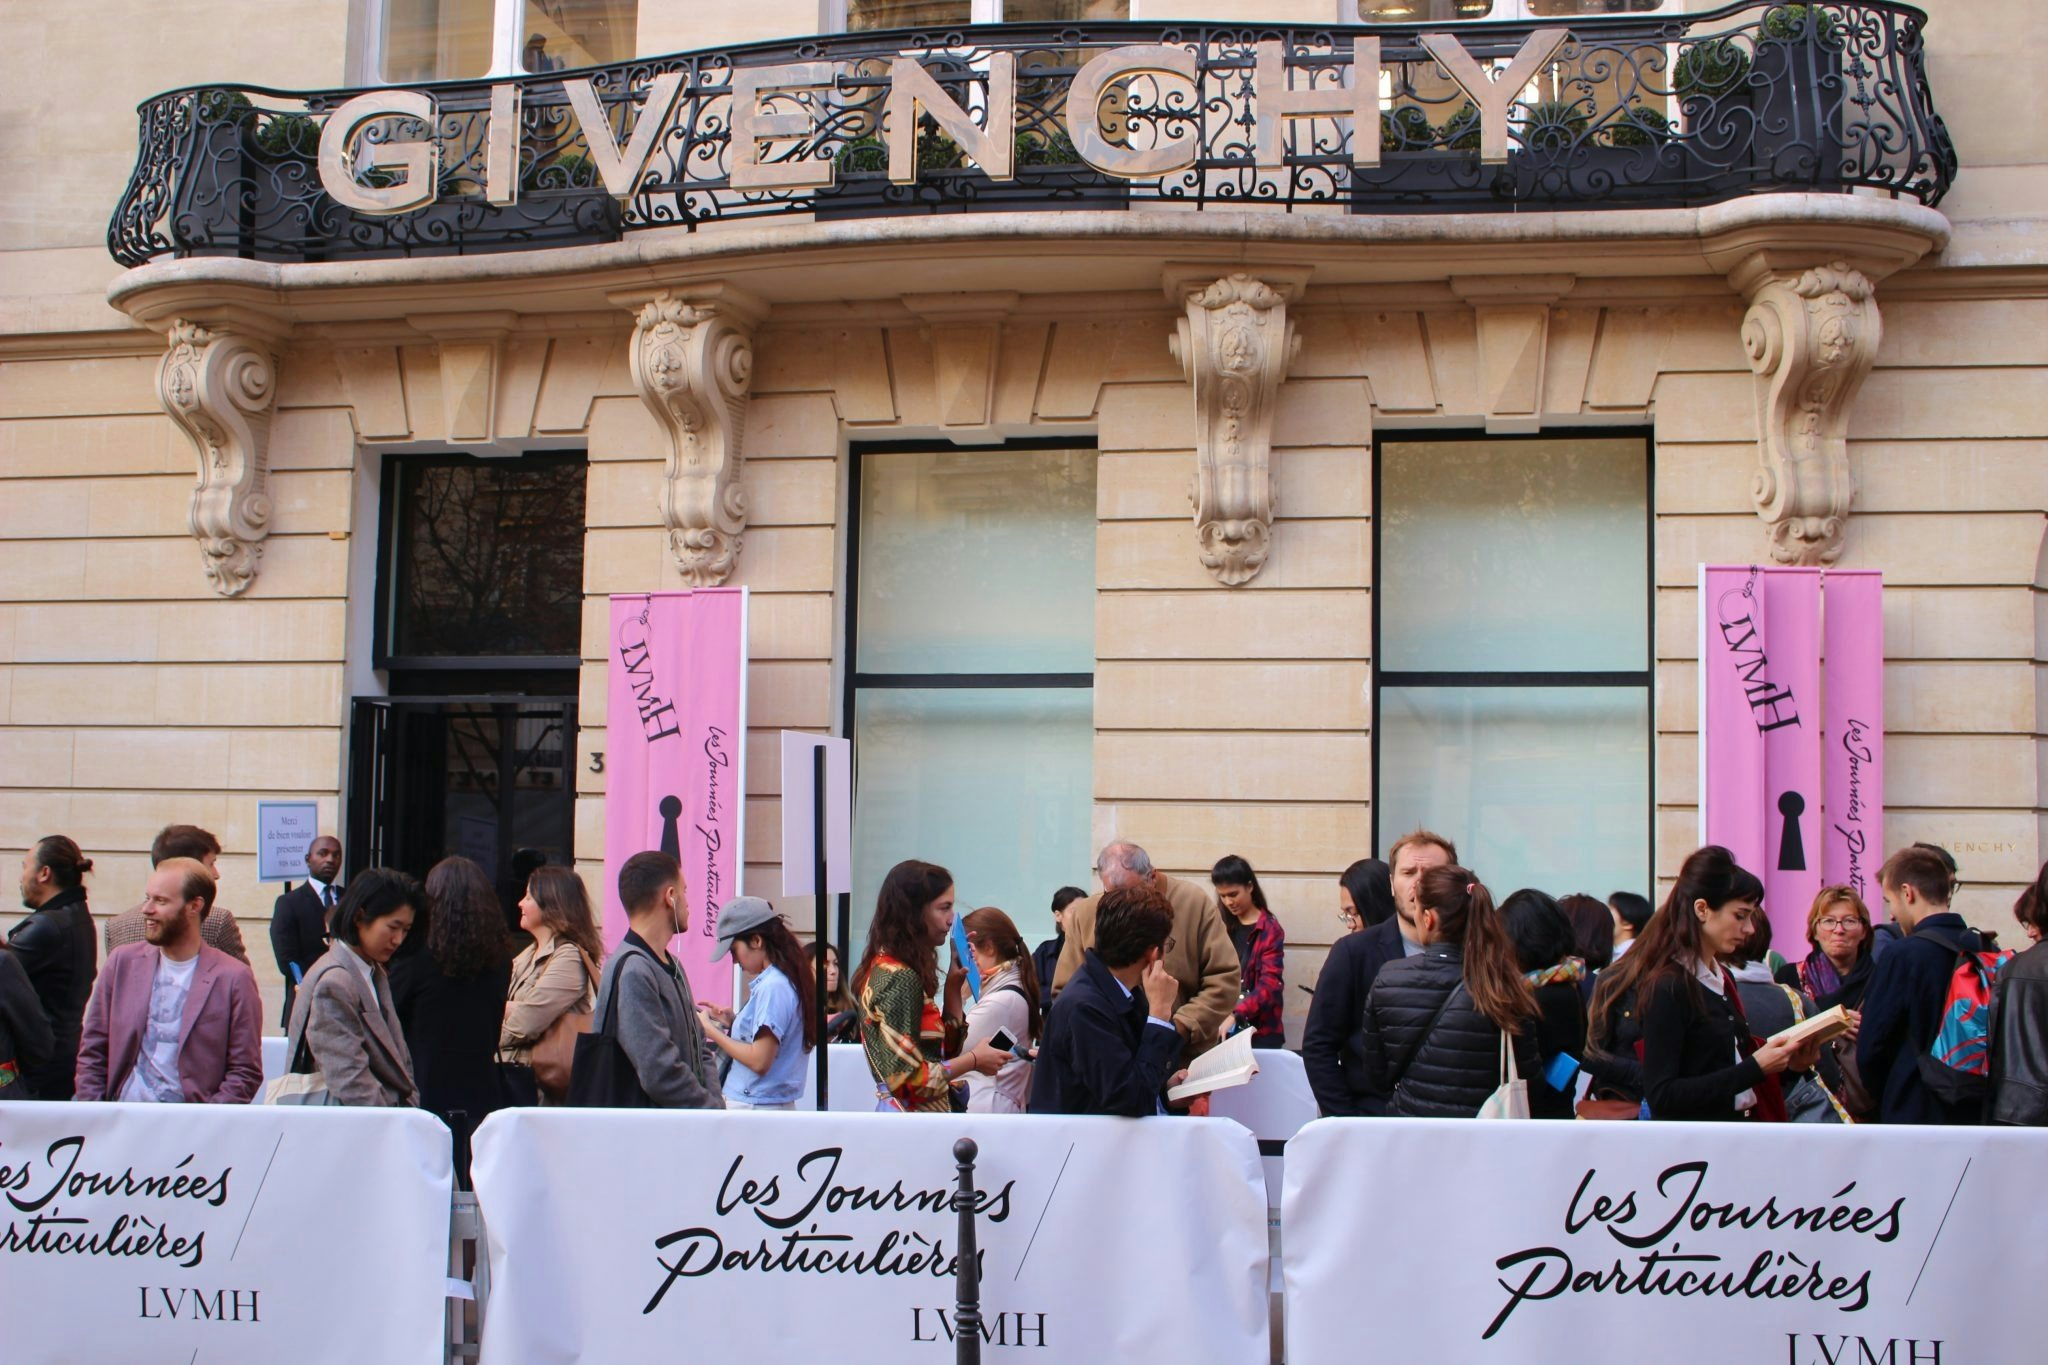 Visitors waiting to enter Givenchy. Photo: Wang Lin